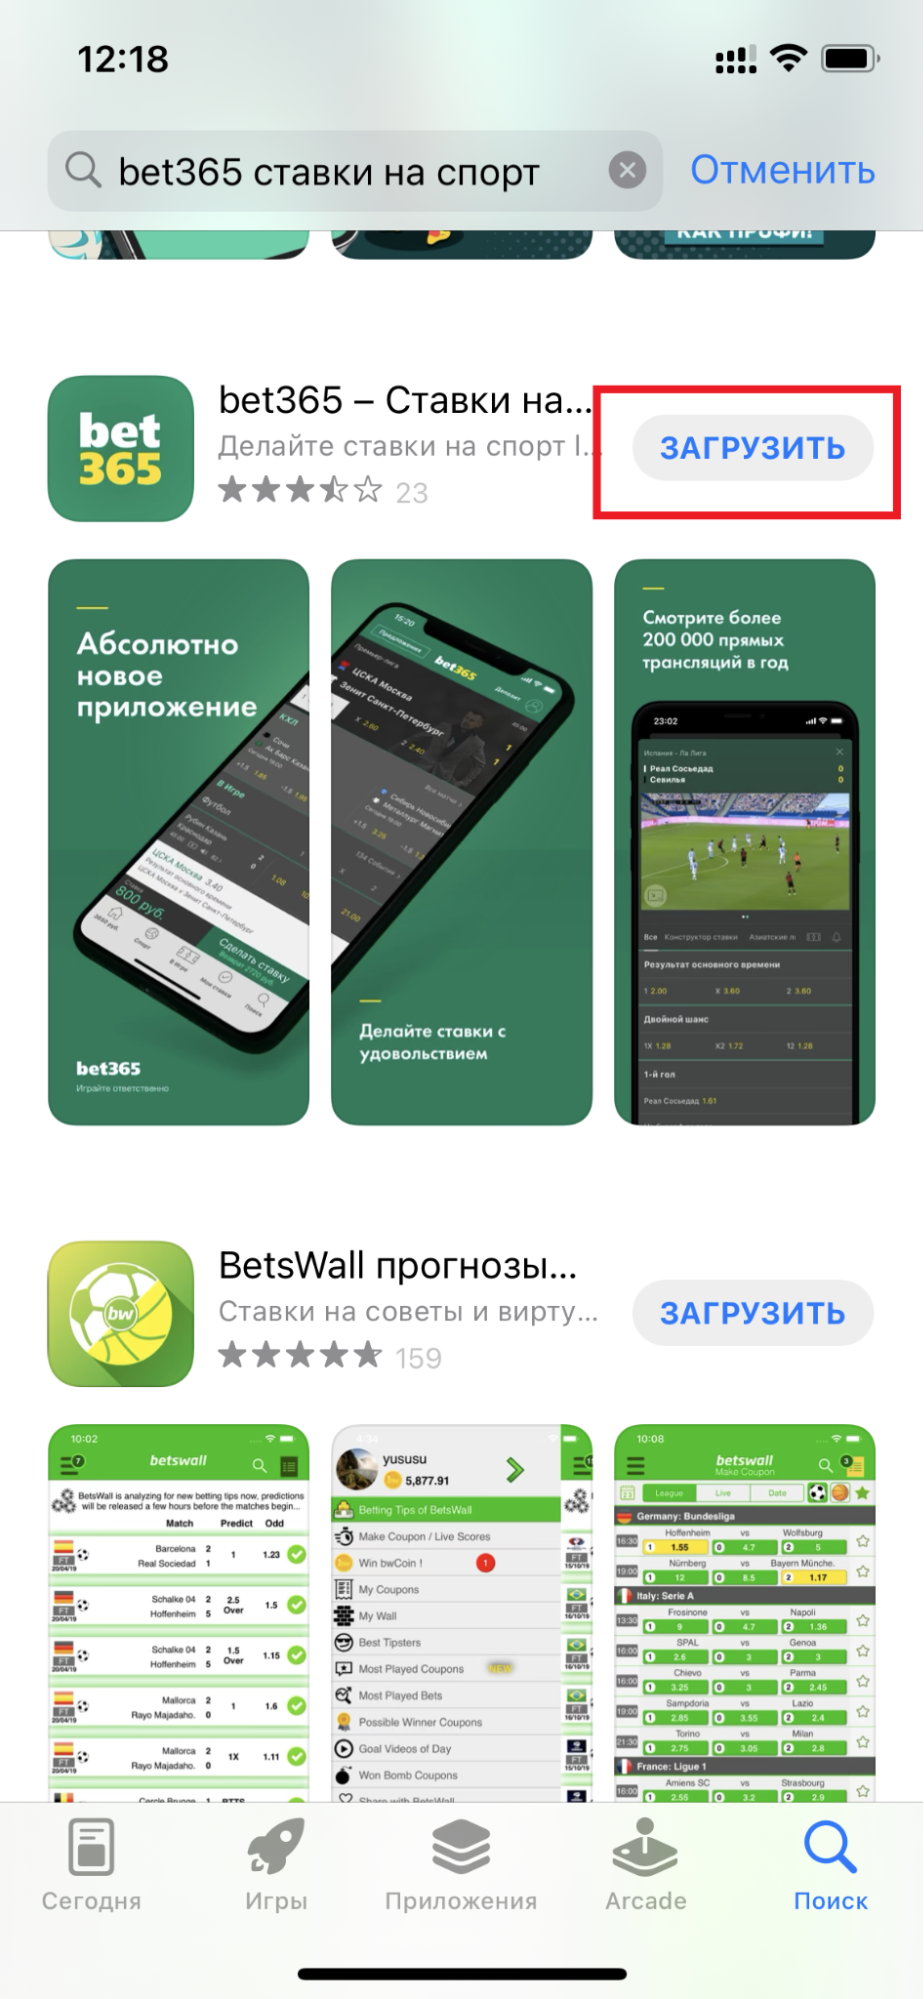 Кнопка загрузки приложения БК bet365.ru для iOS в результатах поиска в магазине AppStore